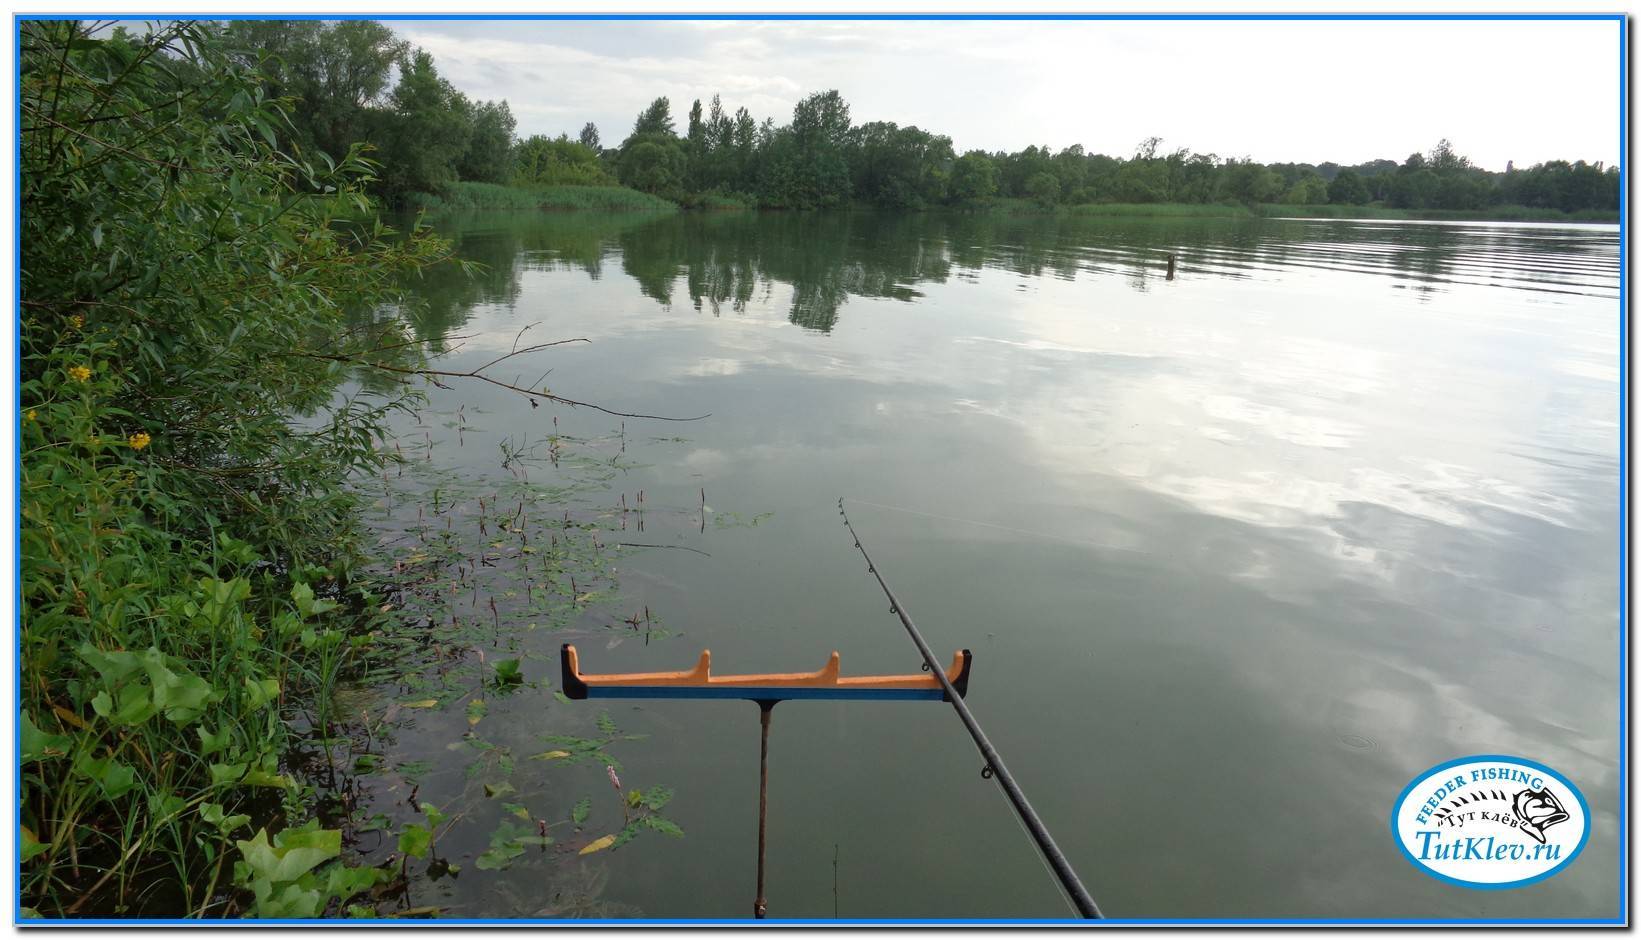 Рыбалка в донецкой области: куда поехать. обзоры водоемов - где ловить и что клюет?